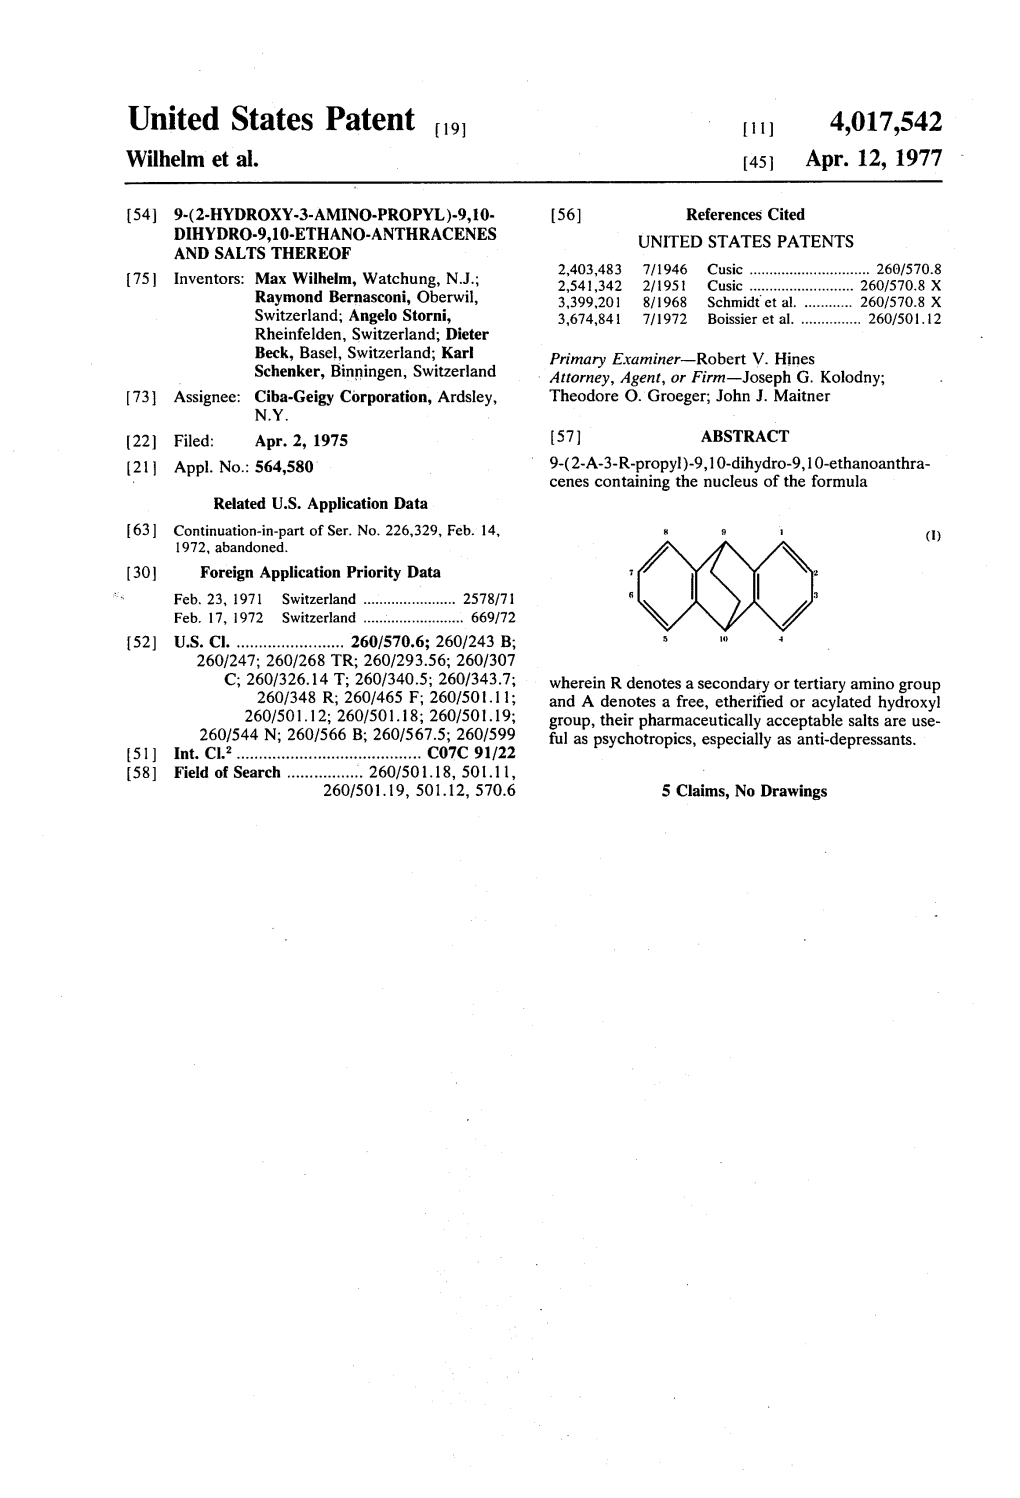 United States Patent to 11) 4,017,542 Wilhelm Et Al